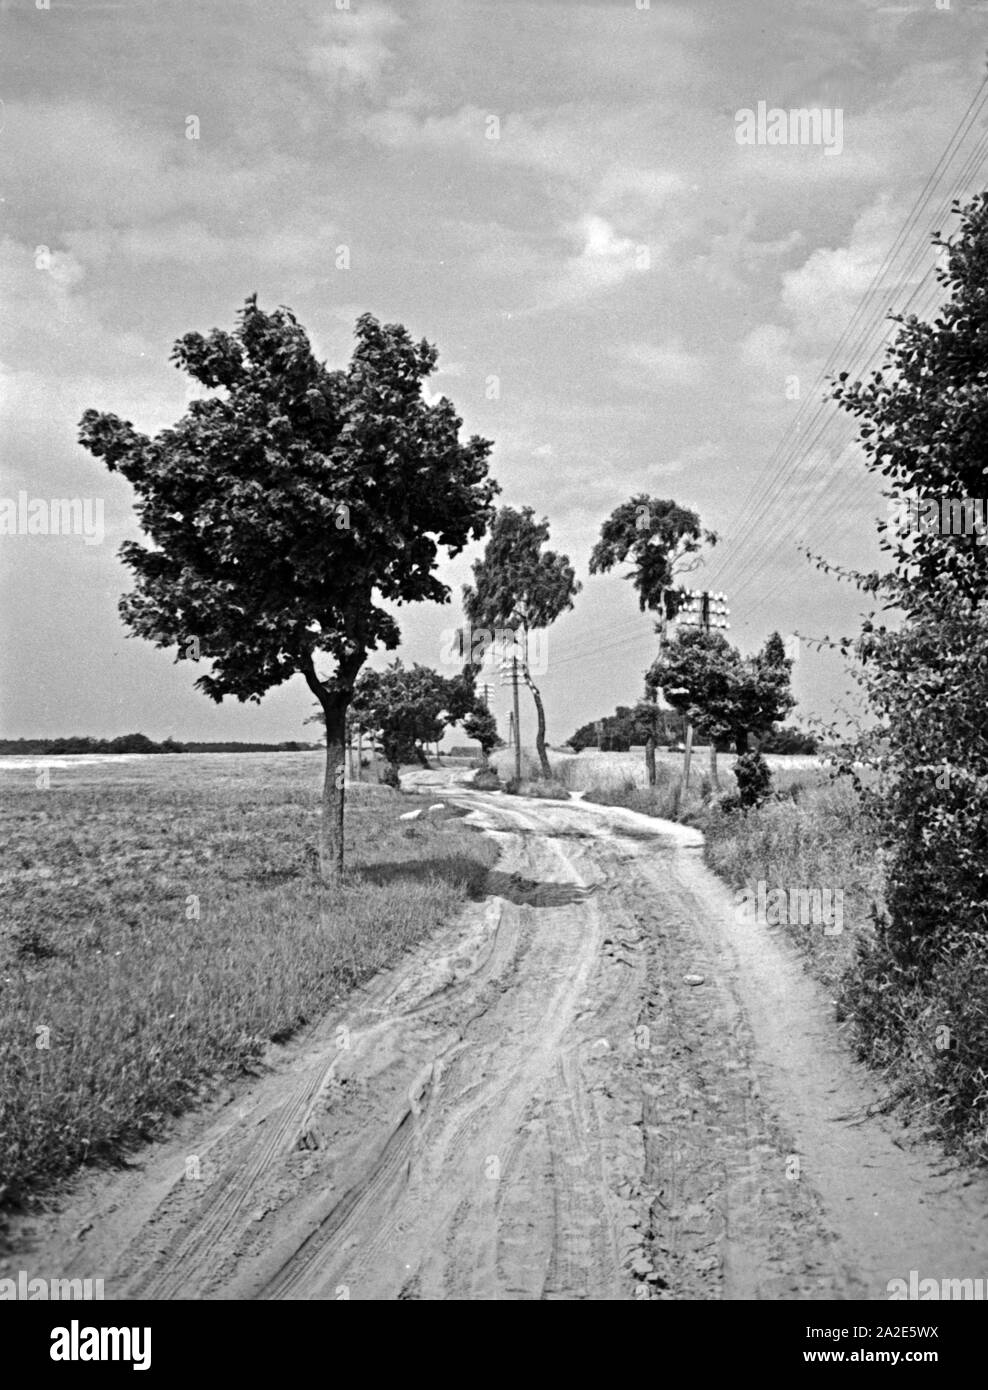 Landstraße vor im Sassau Samland, Ostpreußen, 1930er Jahre. Country Road prima Sassau in Zambia, Prussia orientale, 1930s. Foto Stock